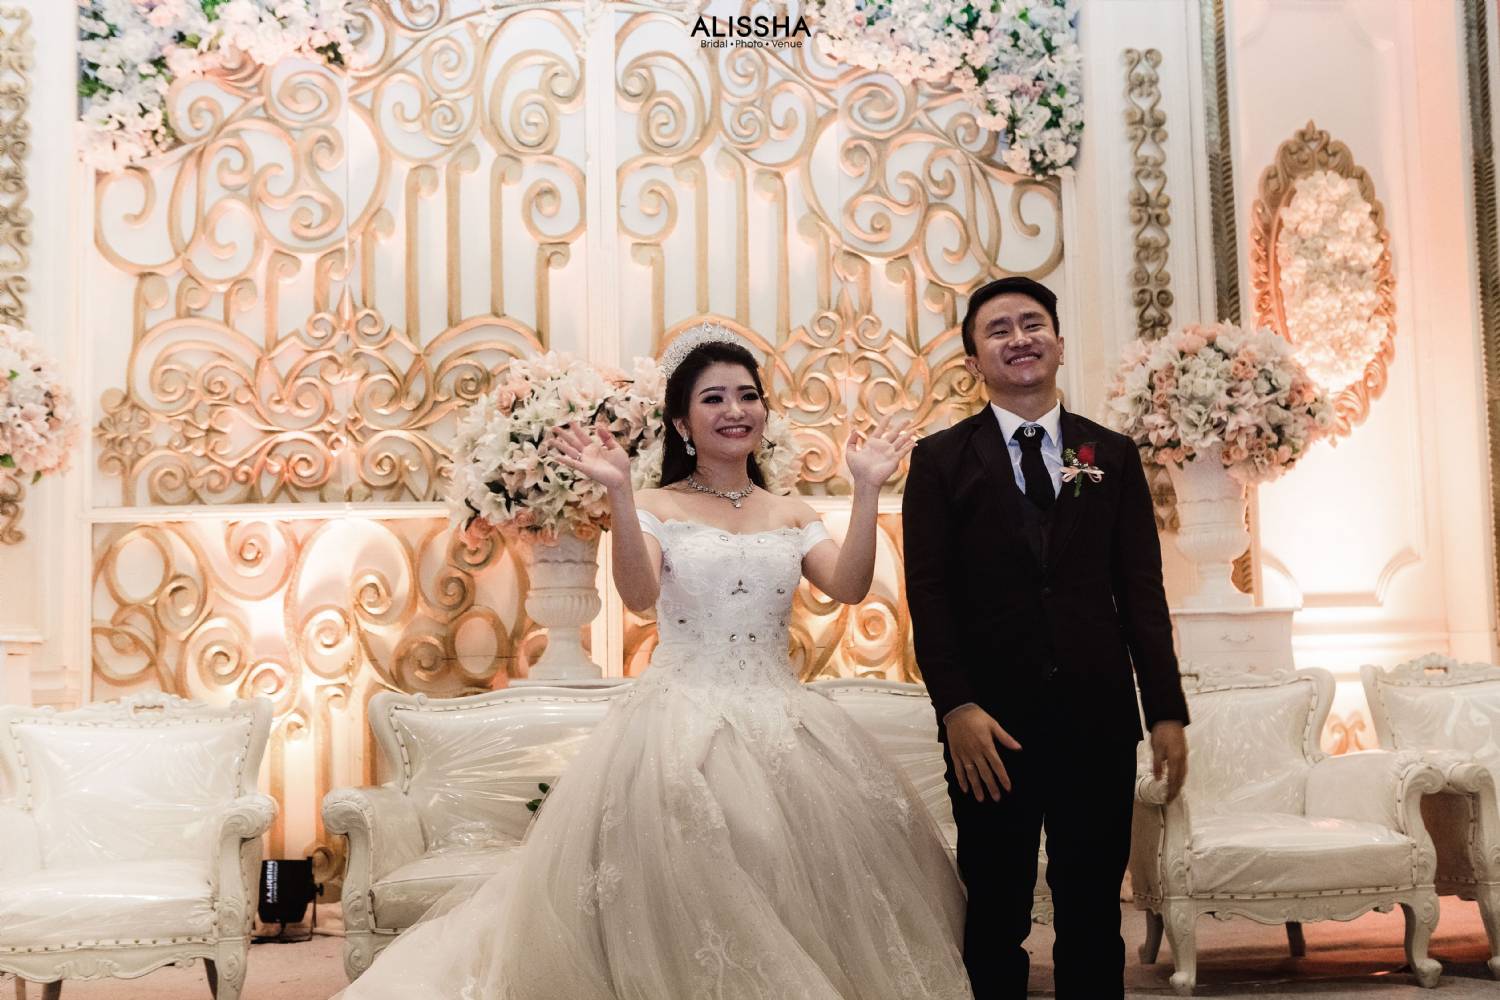 Wedding Day Mardiana & Zainal 30-06-2019 10